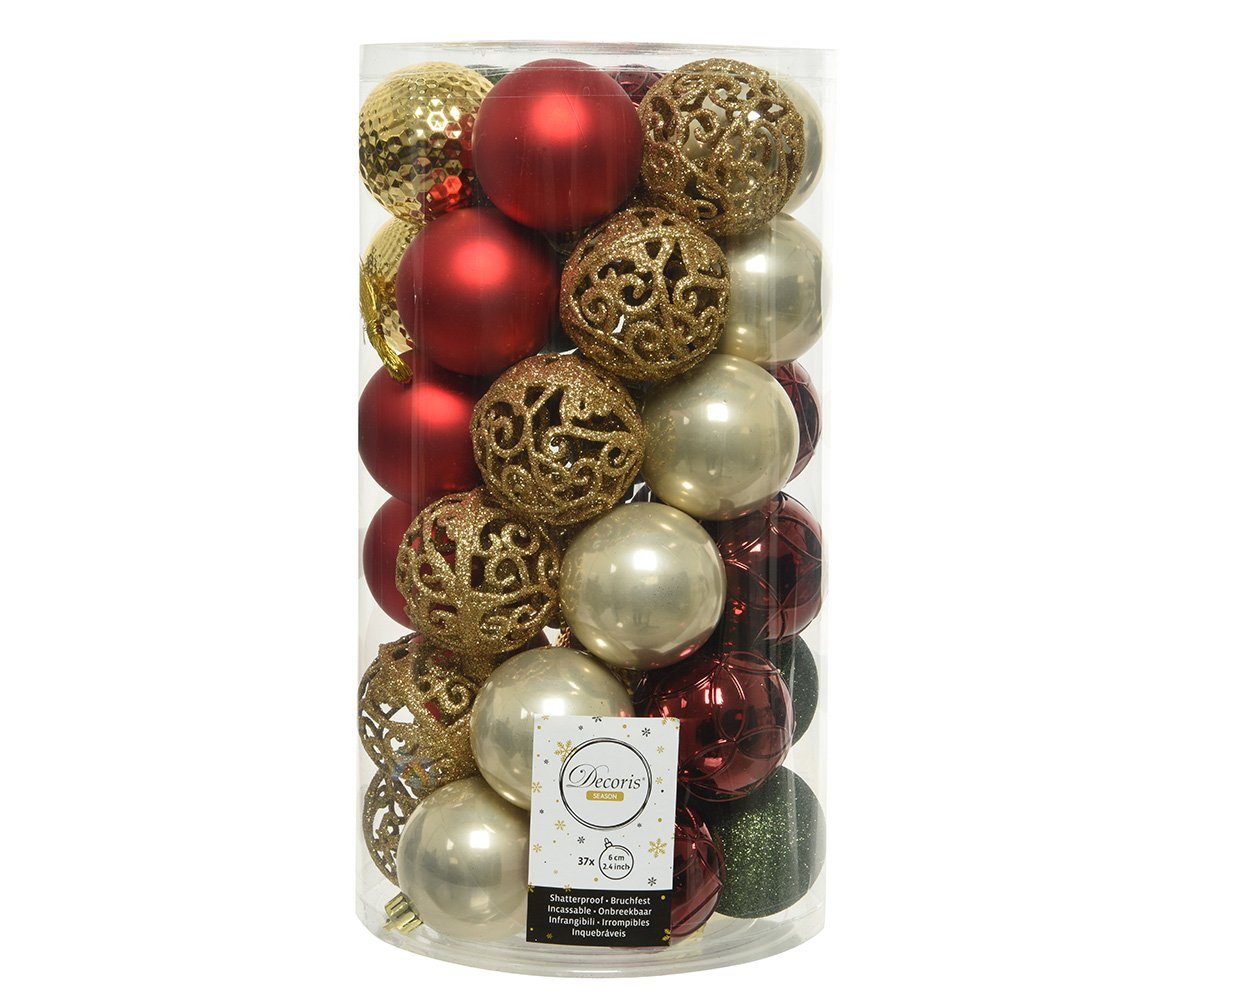 Decoris season decorations Weihnachtsbaumkugel, Weihnachtskugeln Kunststoff Ornamente 6cm Mix bunt, 37er Set